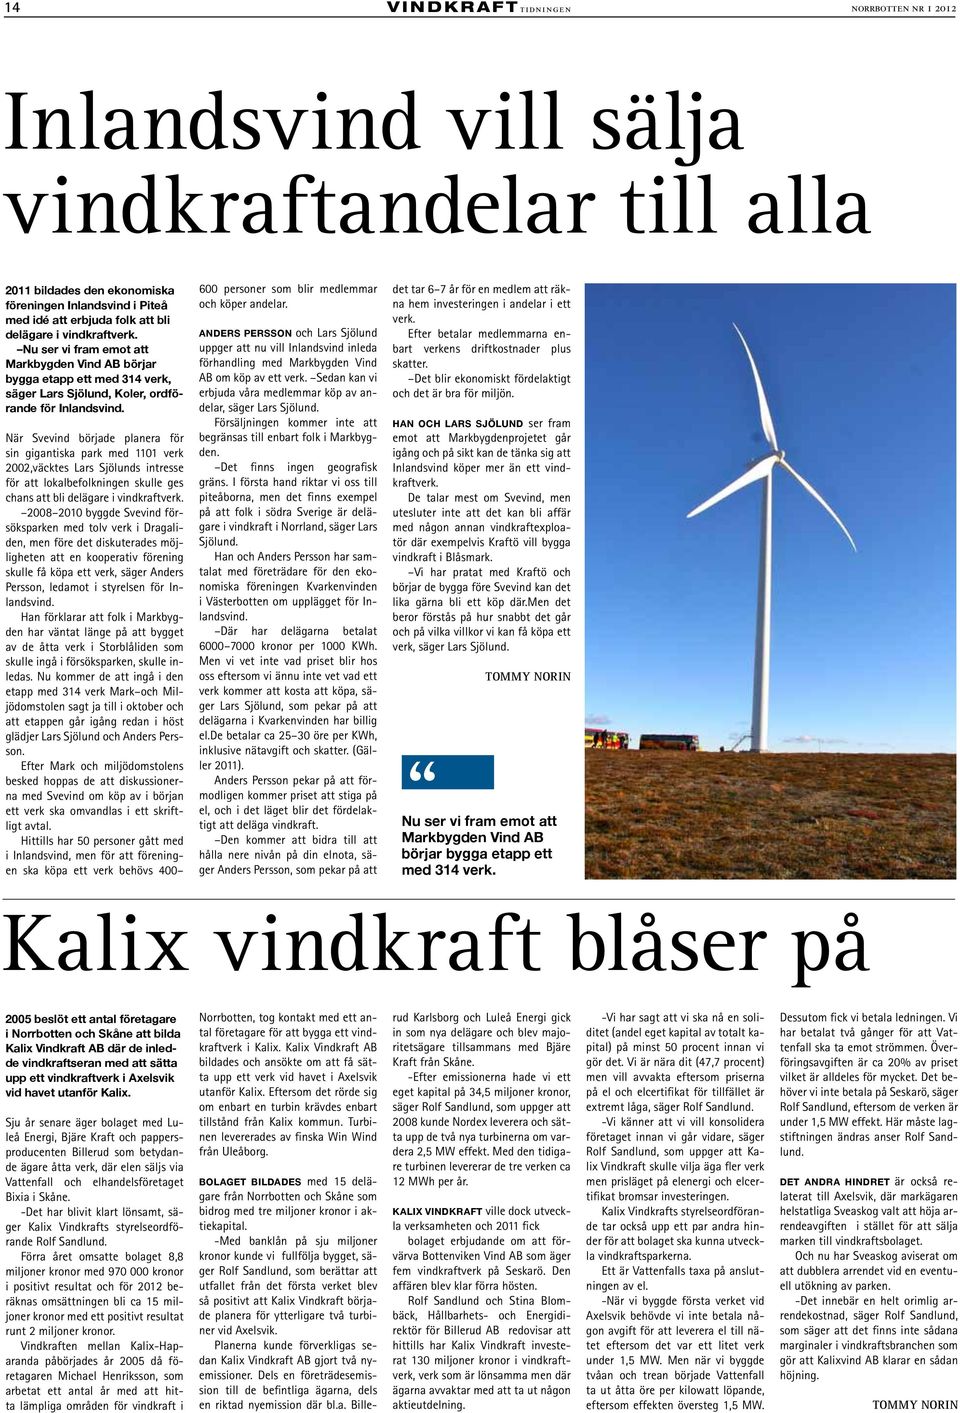 När Svevind började planera för sin gigantiska park med 1101 verk 2002,väcktes Lars Sjölunds intresse för att lokalbefolkningen skulle ges chans att bli delägare i vindkraftverk.